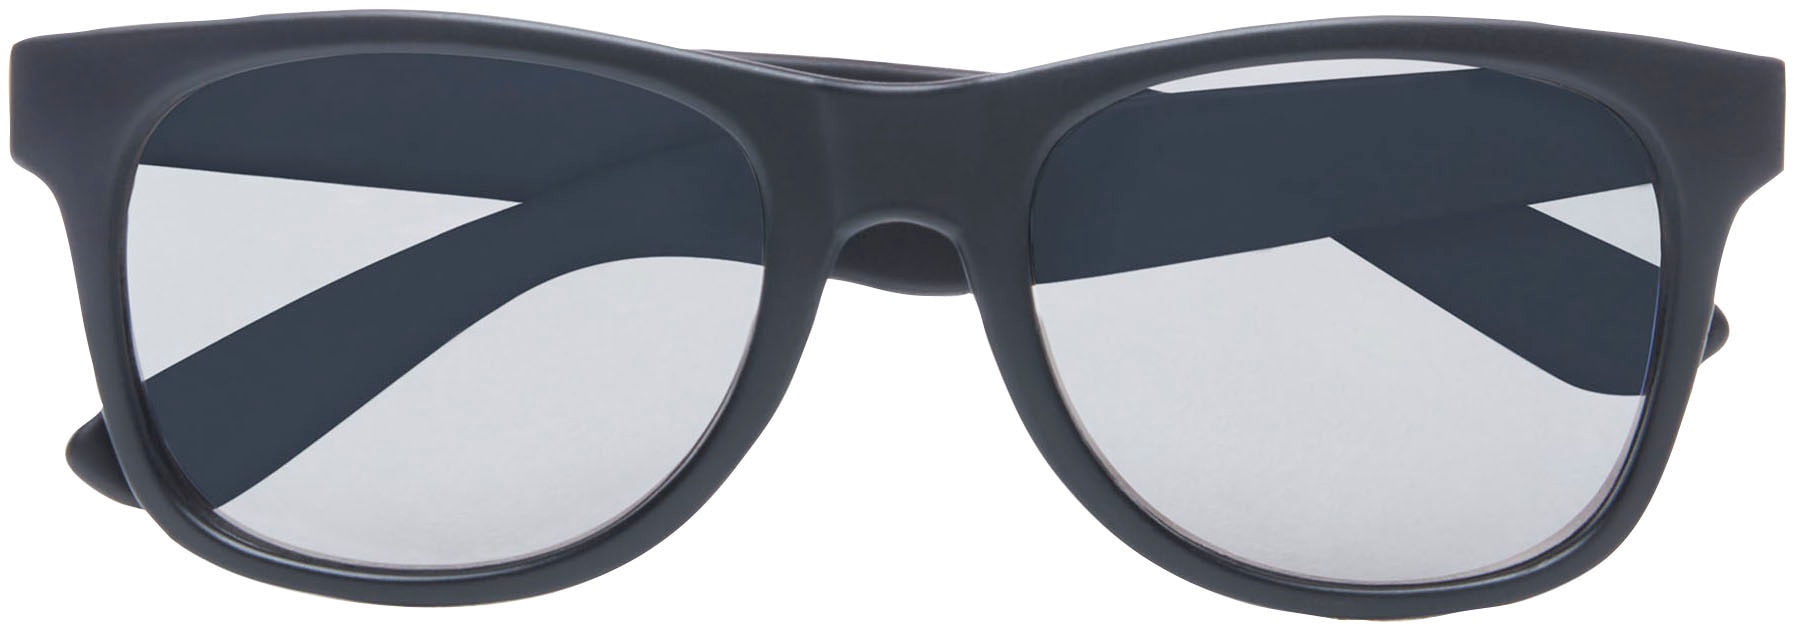 Vans Sonnenbrille »MN SPICOLI 4 online kaufen bei SHADES« OTTO